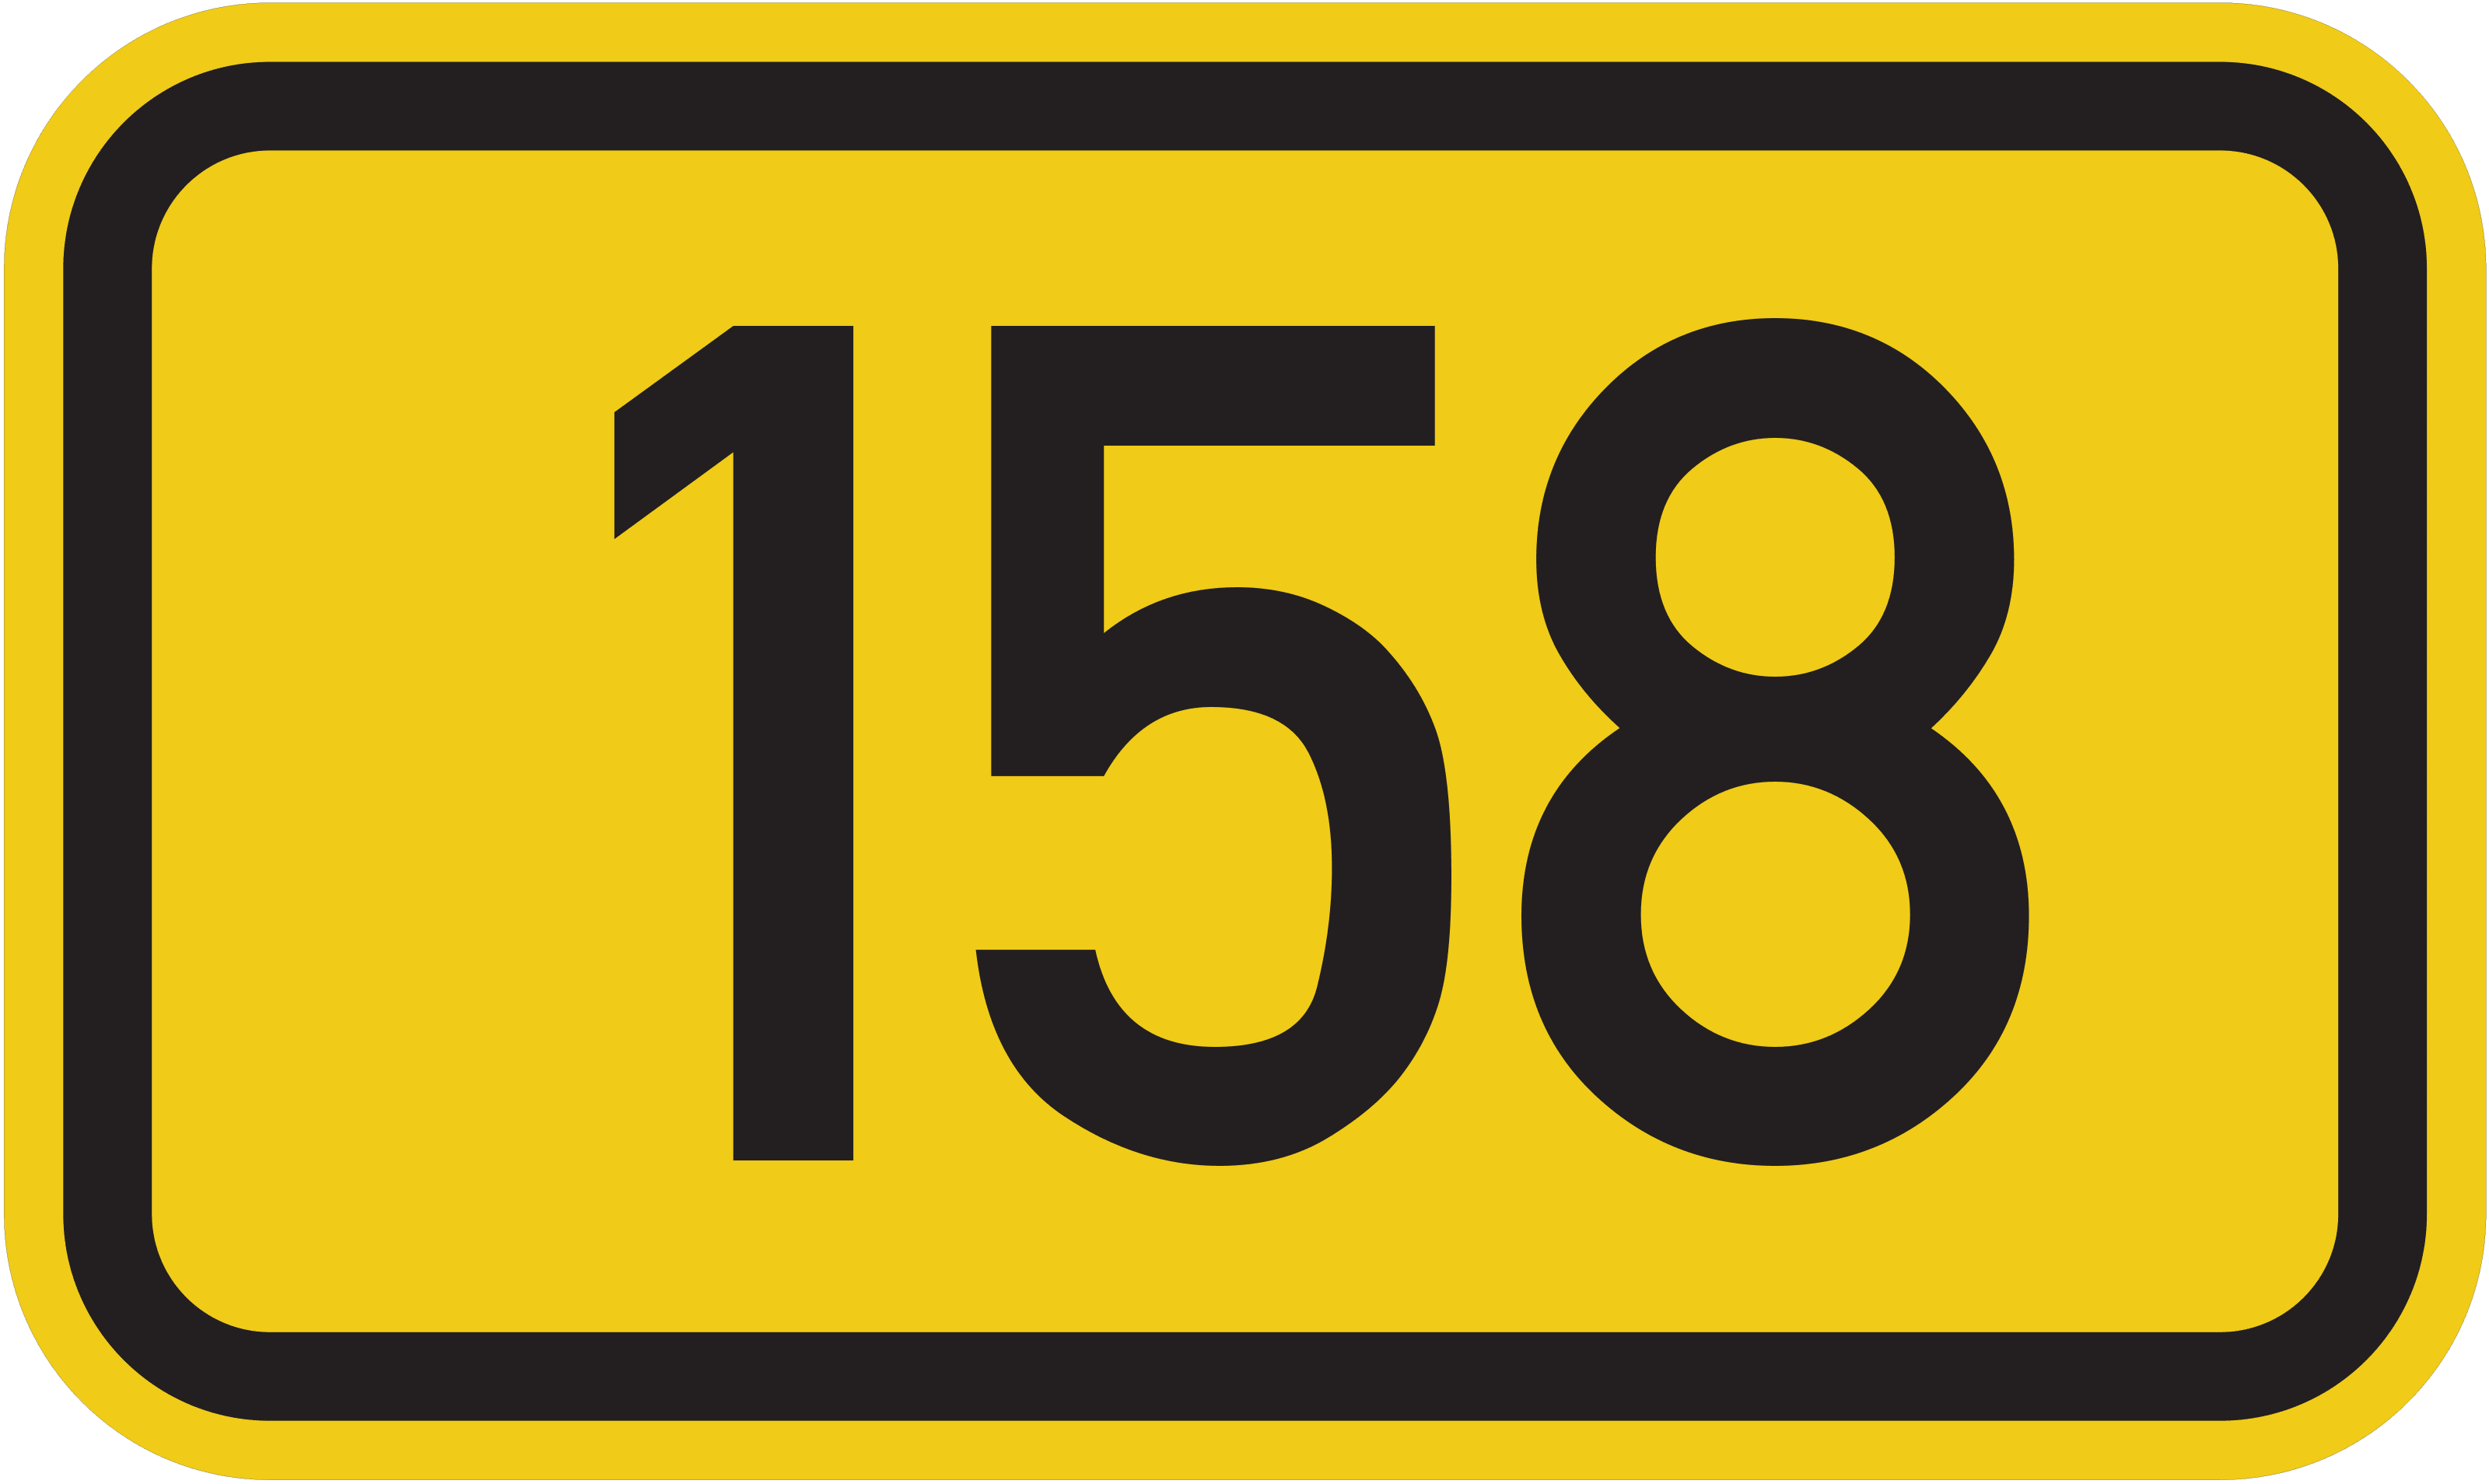 Bundesstraße B 158